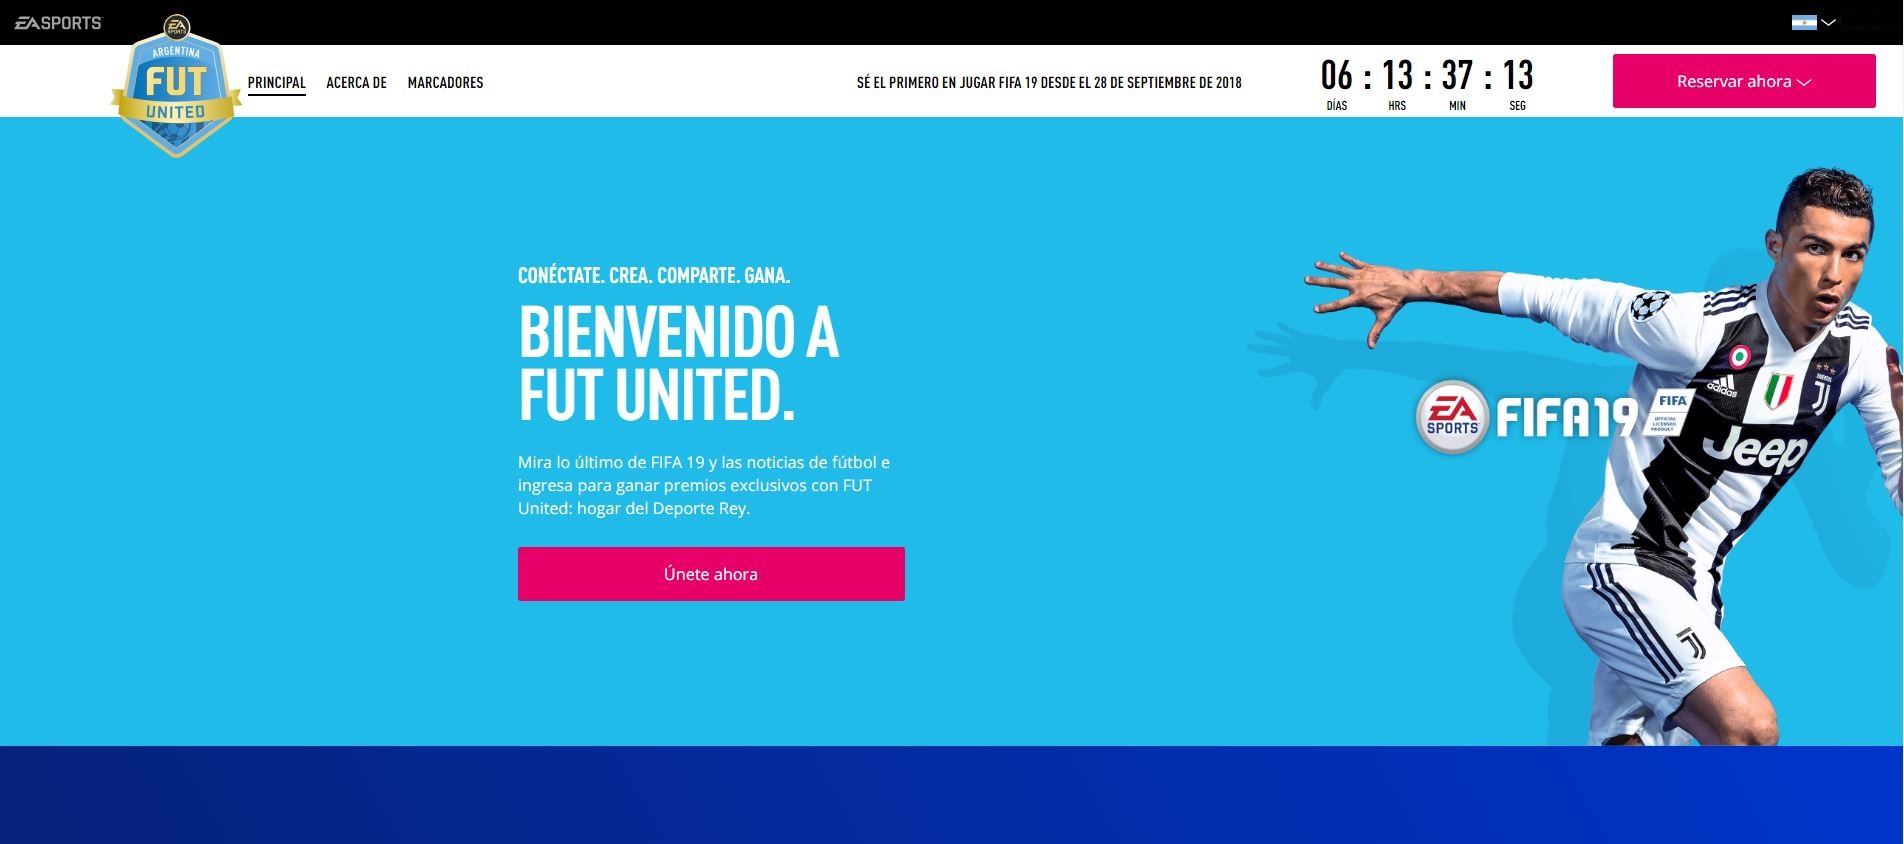 ¡FUT UNITED llega a Latinoamérica! Premios, viajes y desafíos en la “red social” del FIFA 19